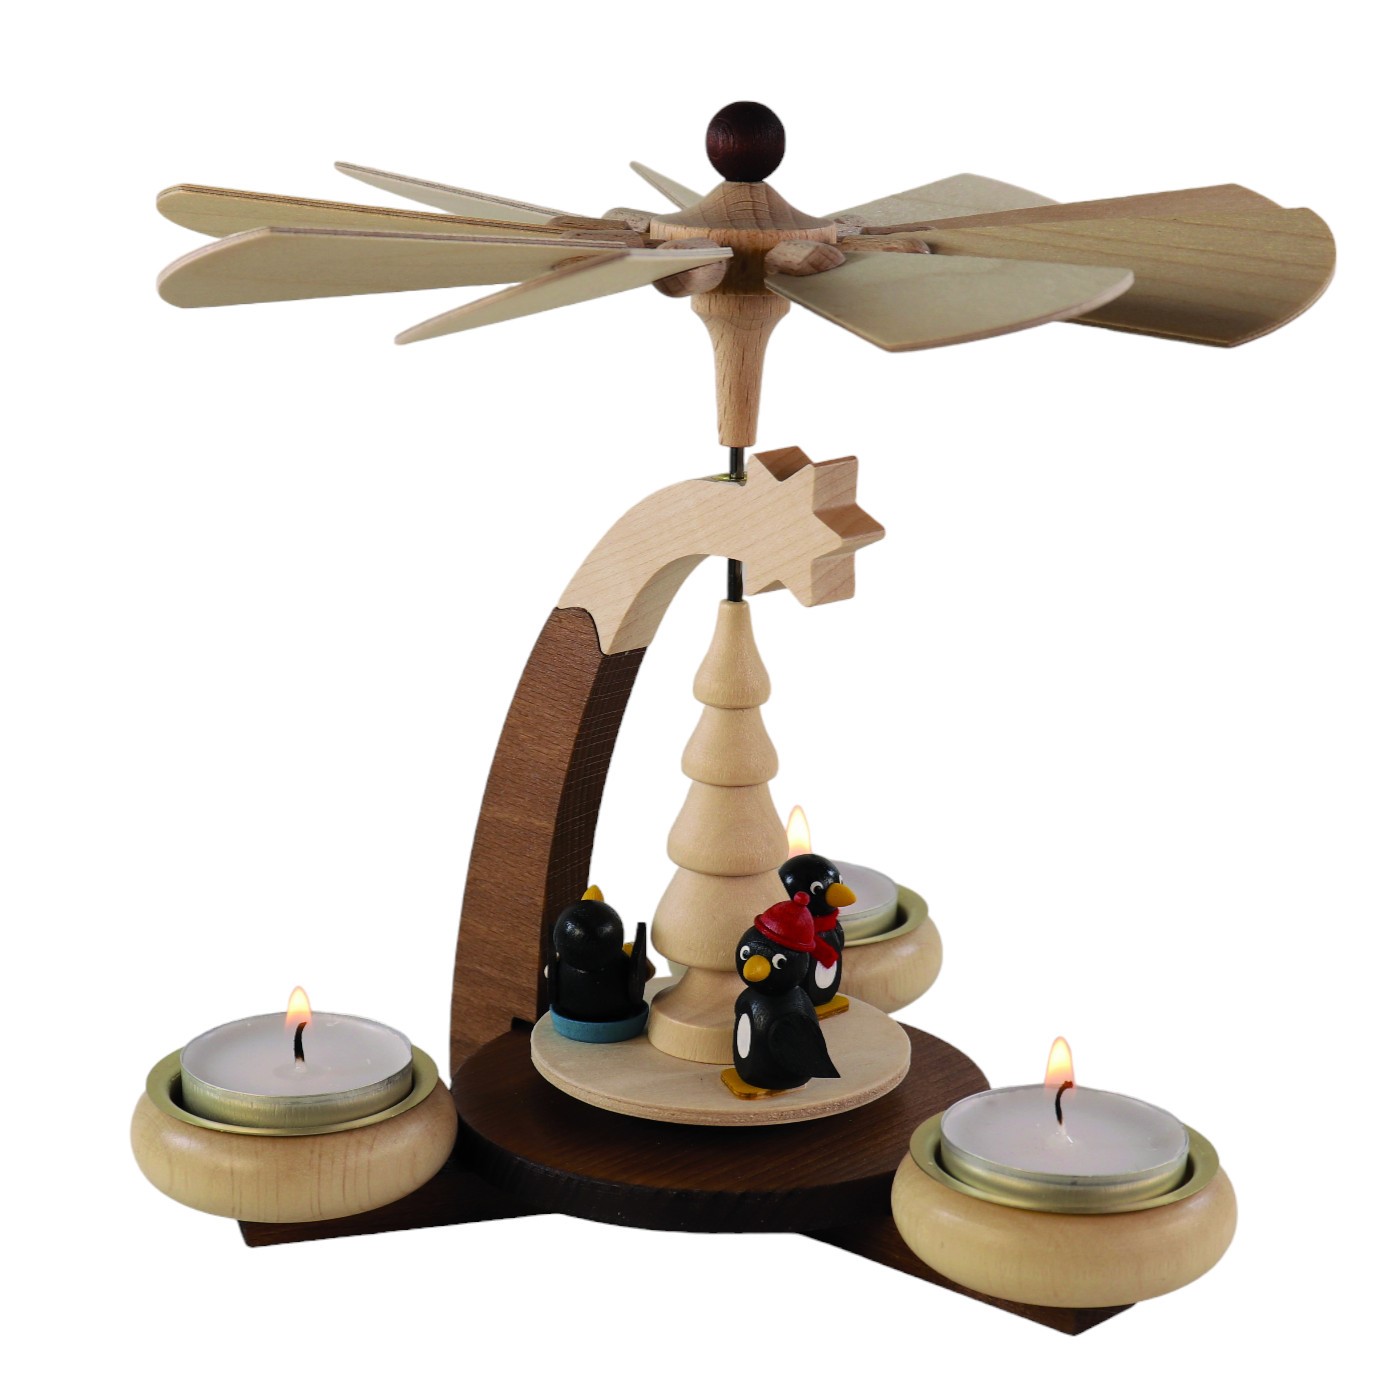 Design-Teelichtpyramide braun/natur & Tüllen natur mit Pinguine für 3 Teelichte, Höhe 19cm